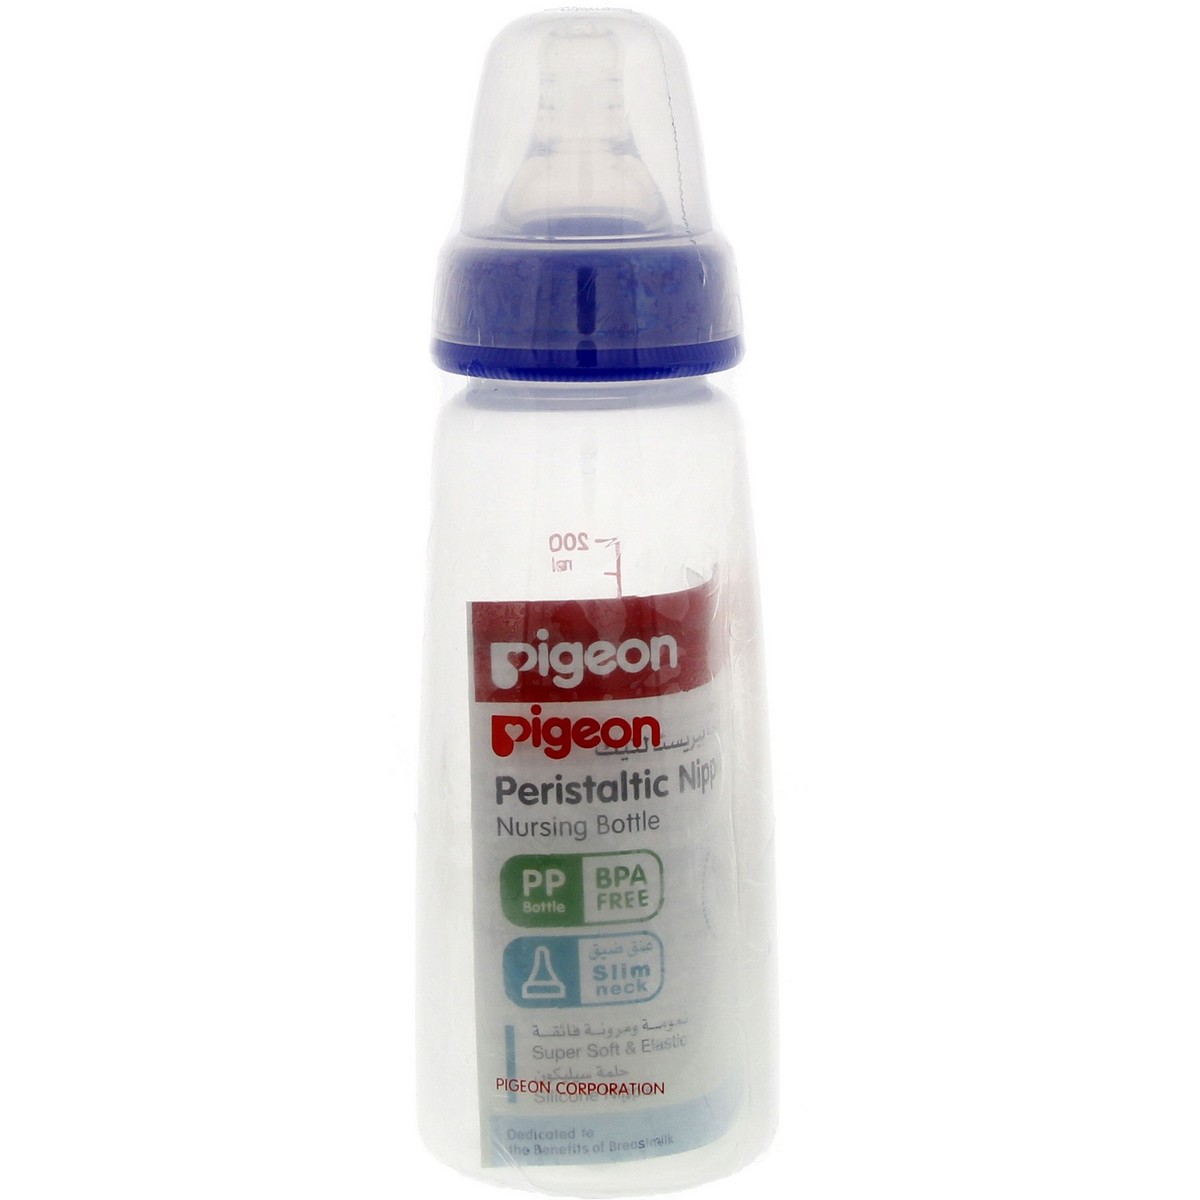 Pigeon Peristaltic Nipple Nursing Bottle 200ml